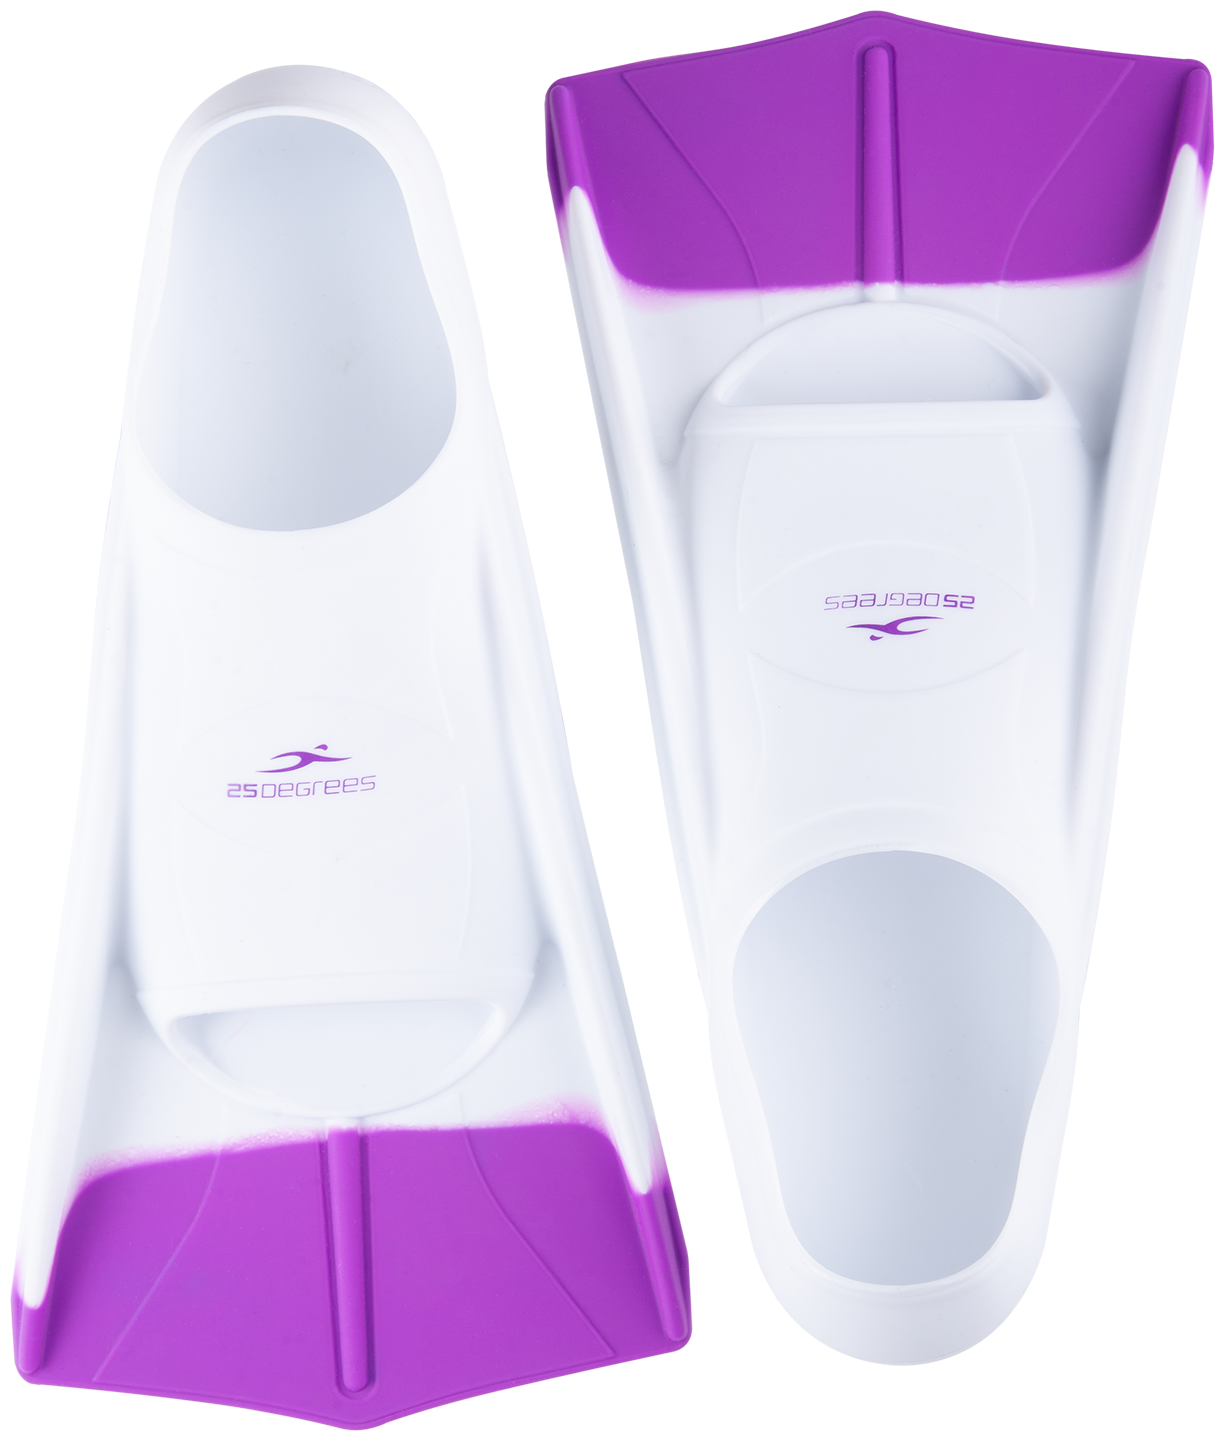 Ласты тренировочные 25degrees Pooljet White/purple, Xxs